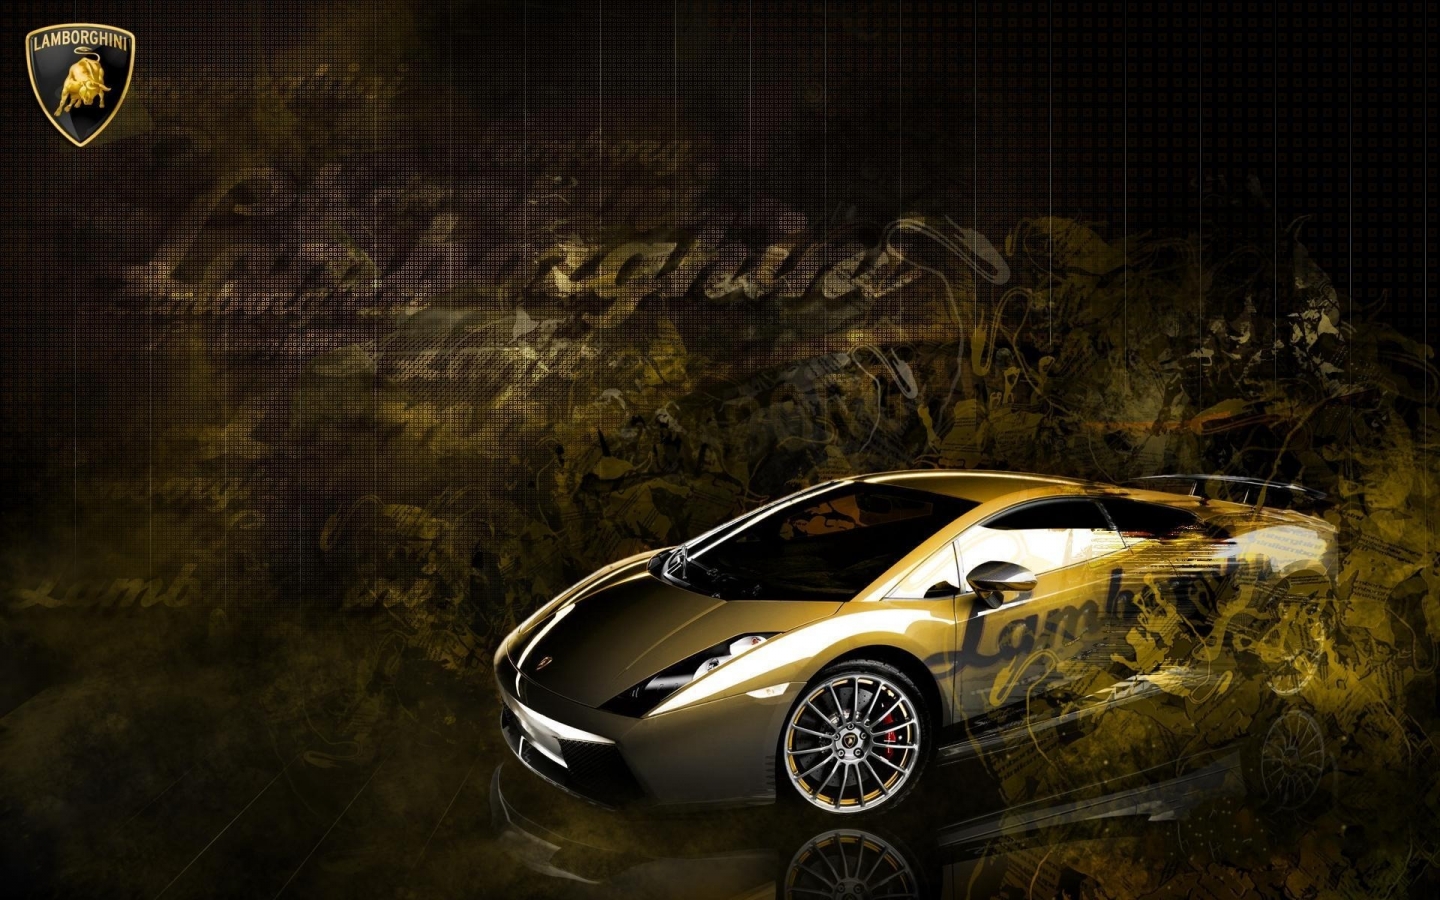 Lamborghini Gallardo for 1440 x 900 widescreen resolution